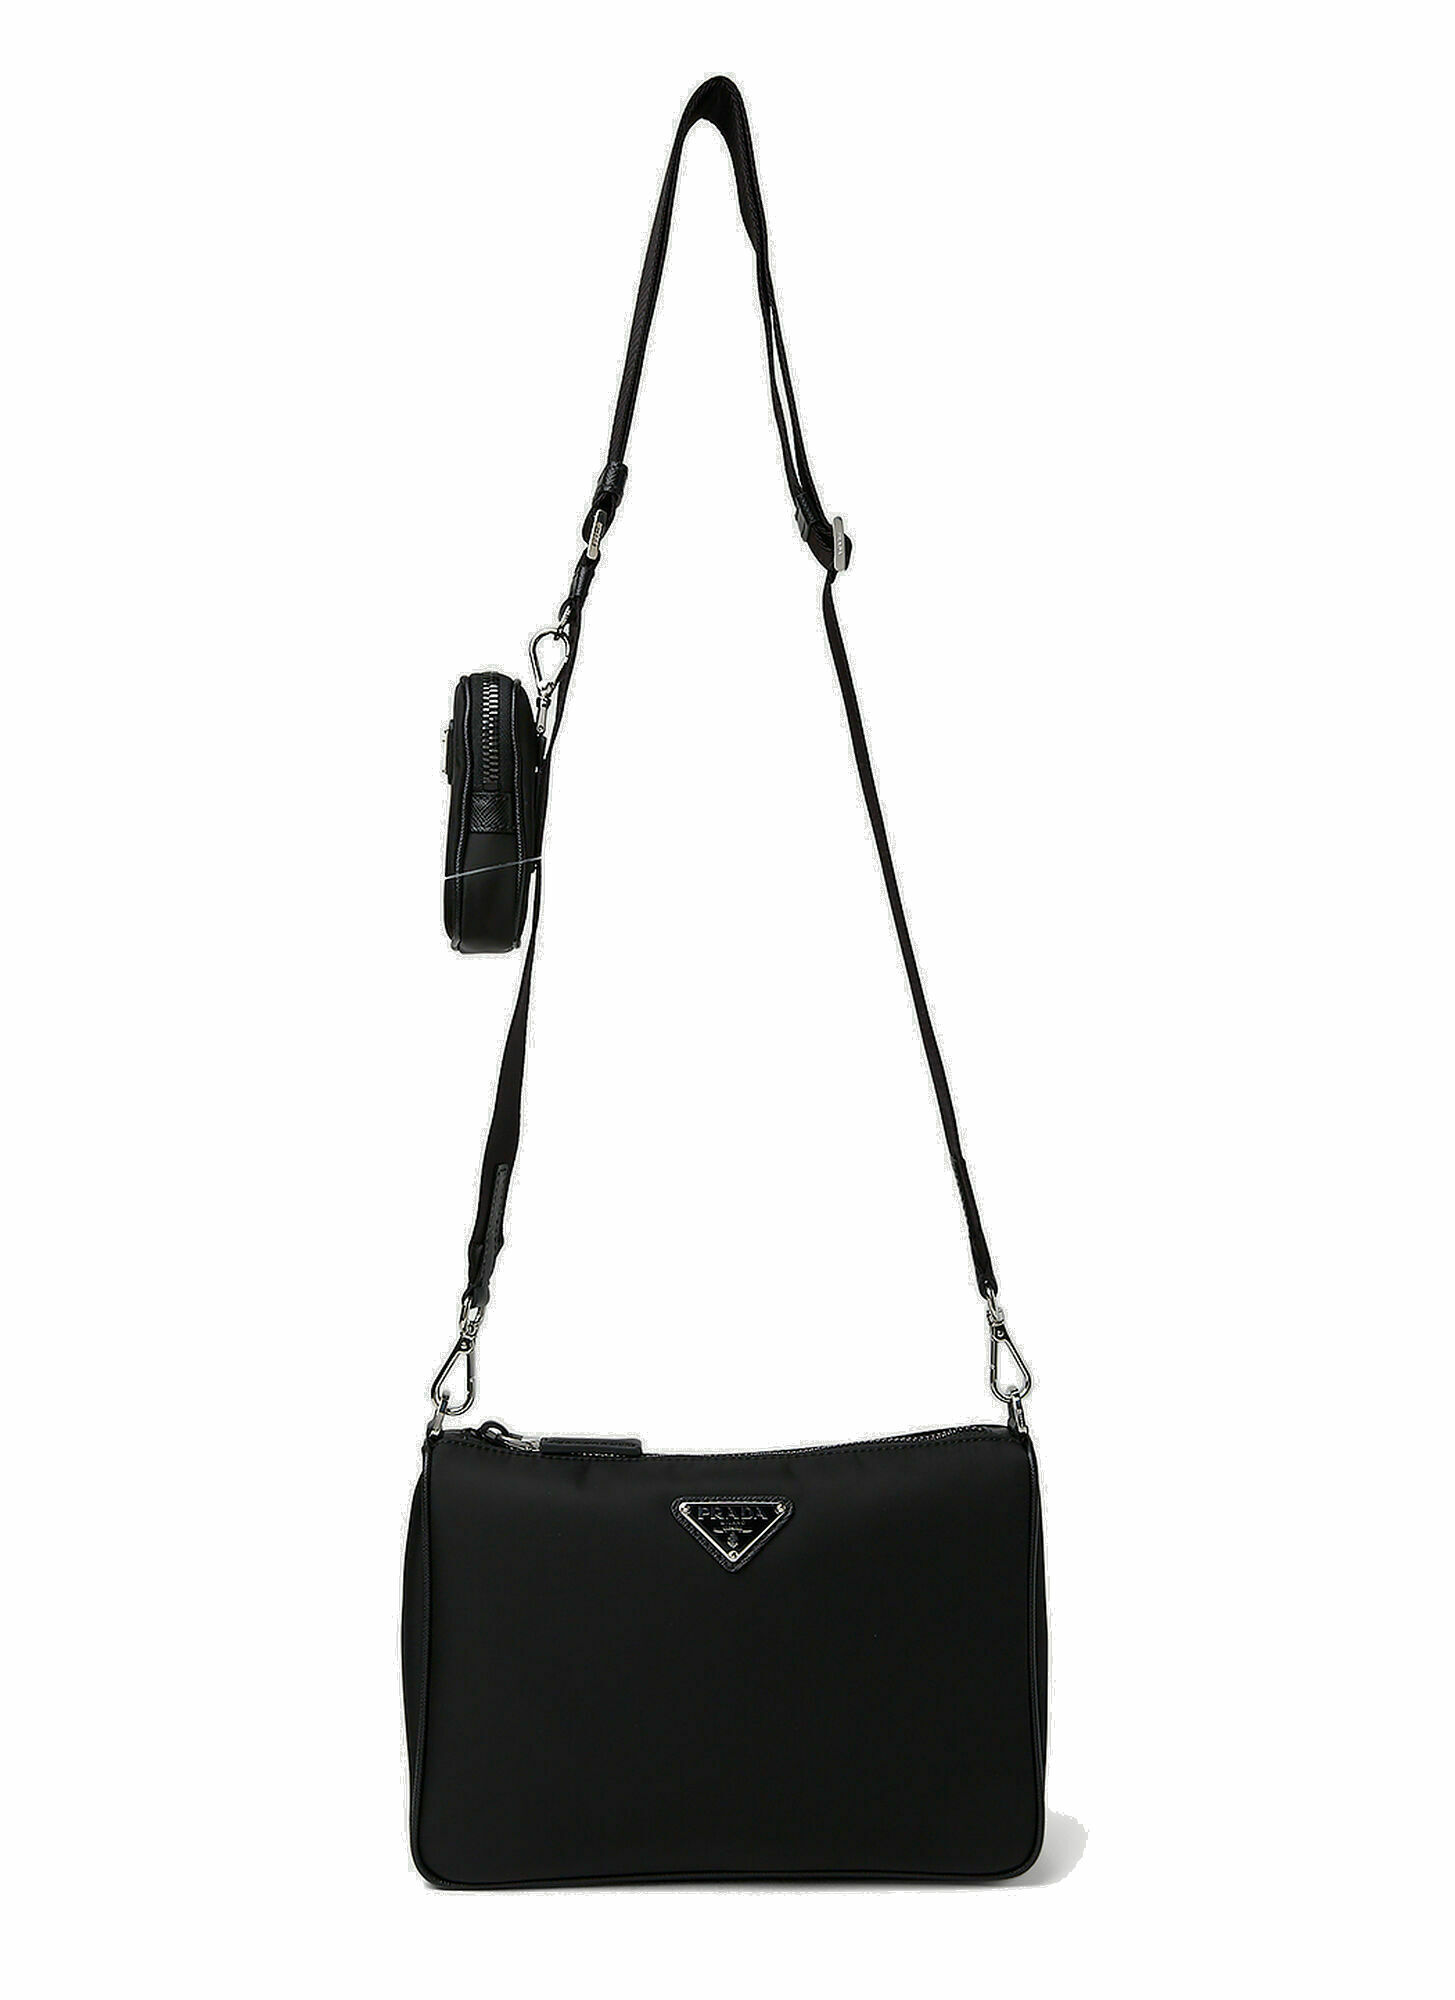 Photo: Re-Nylon Crossbody Bag in Black